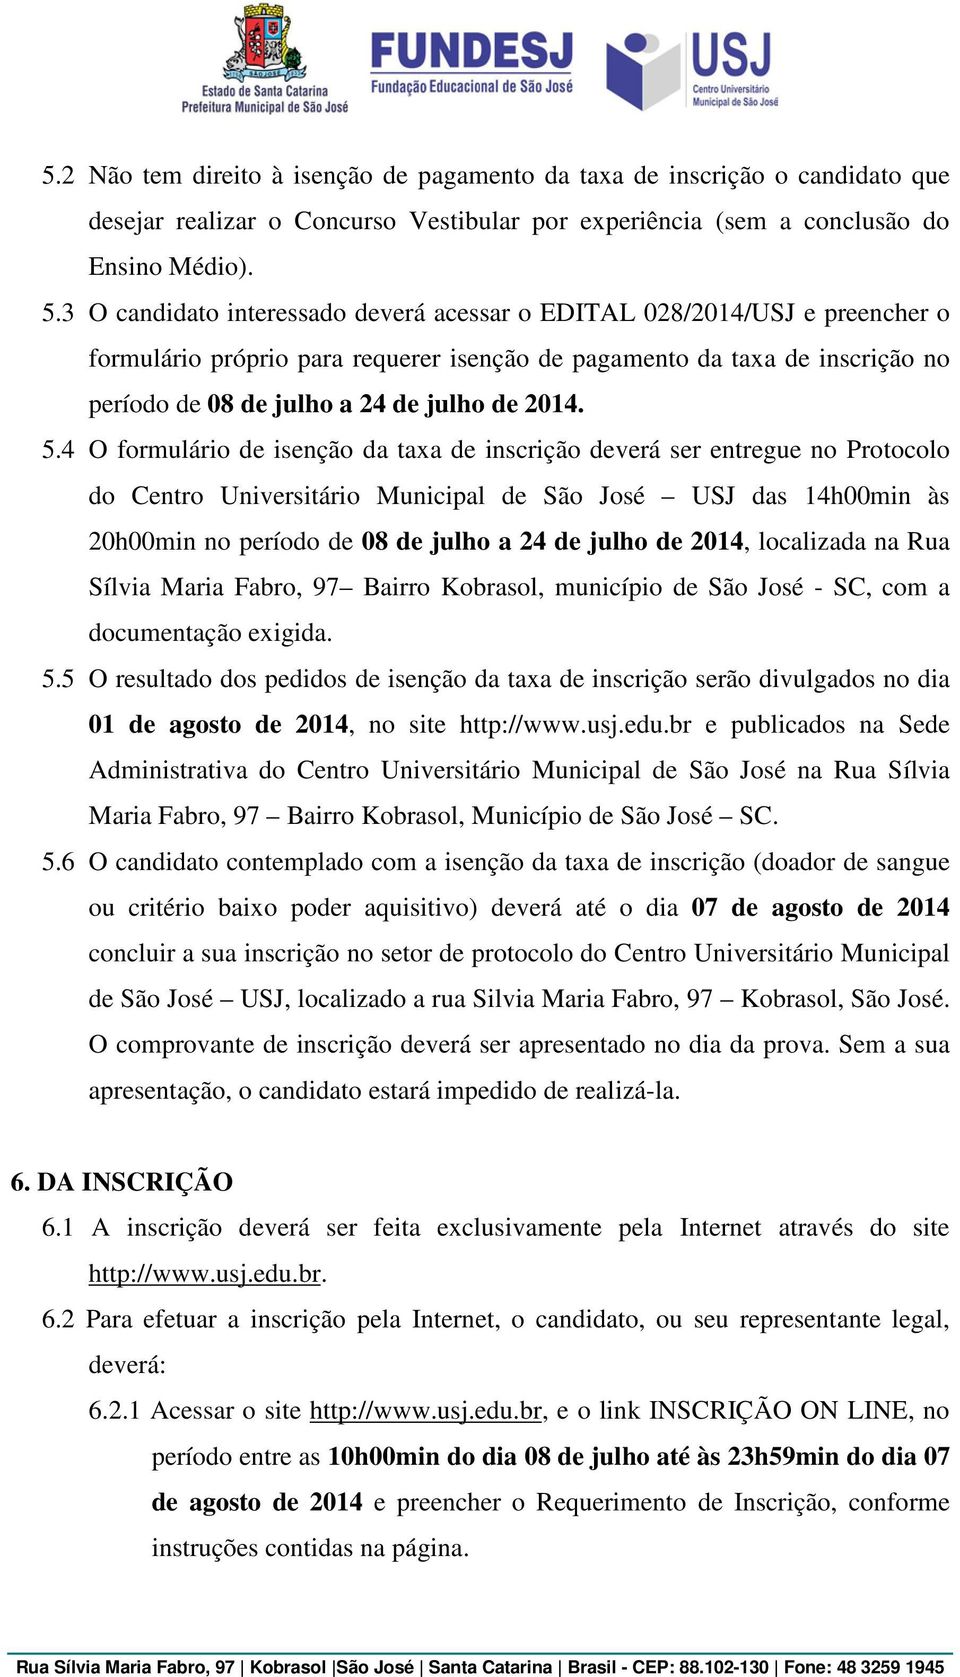 5.4 O formulário de isenção da taxa de inscrição deverá ser entregue no Protocolo do Centro Universitário Municipal de São José USJ das 14h00min às 20h00min no período de 08 de julho a 24 de julho de